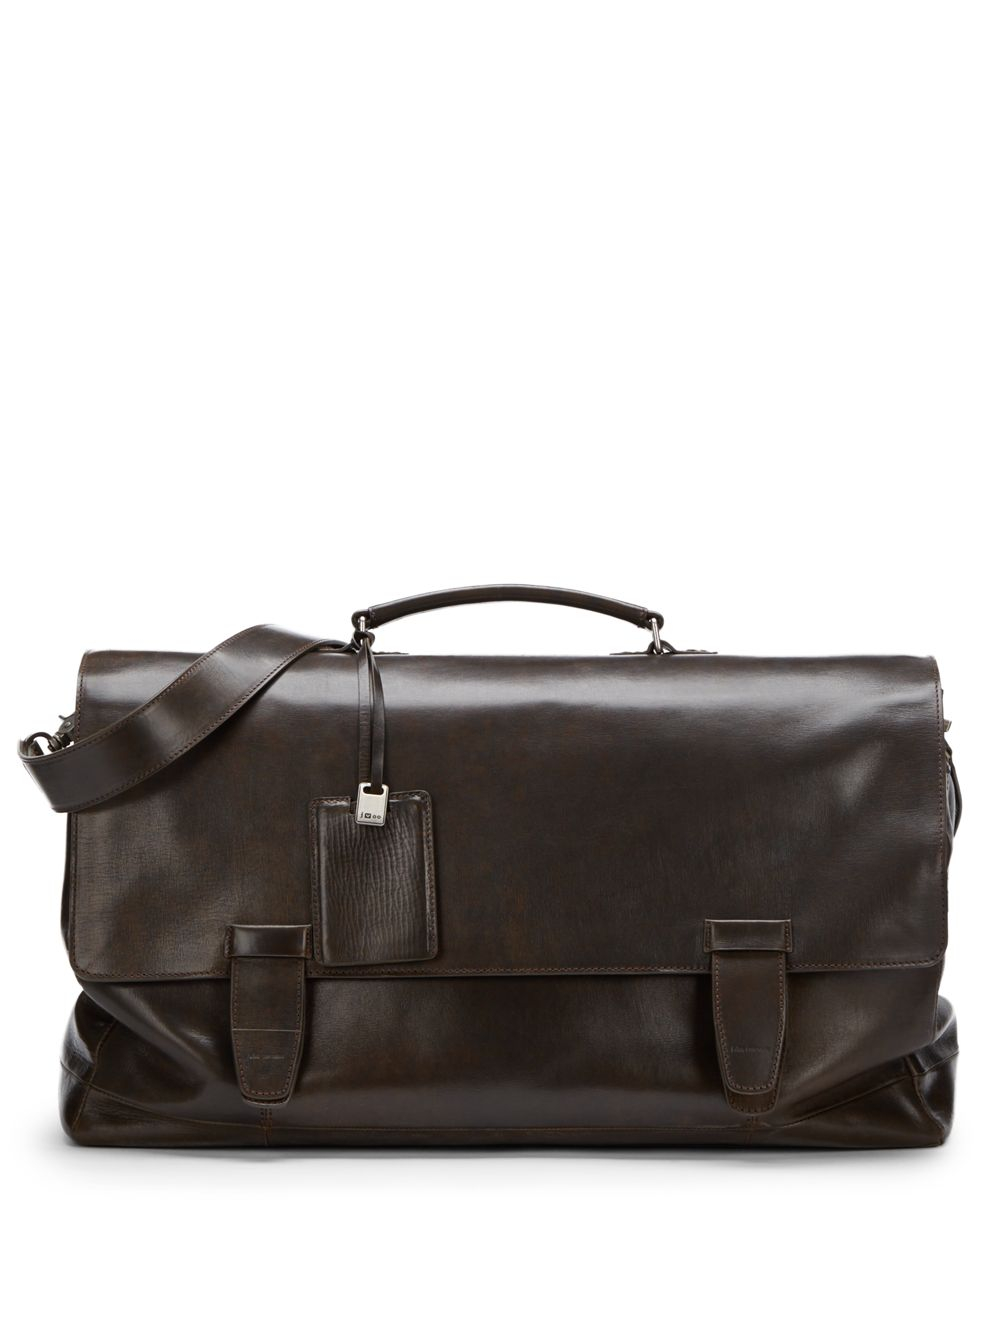 John varvatos Modern Leather Messenger Bag in Brown for Men | Lyst